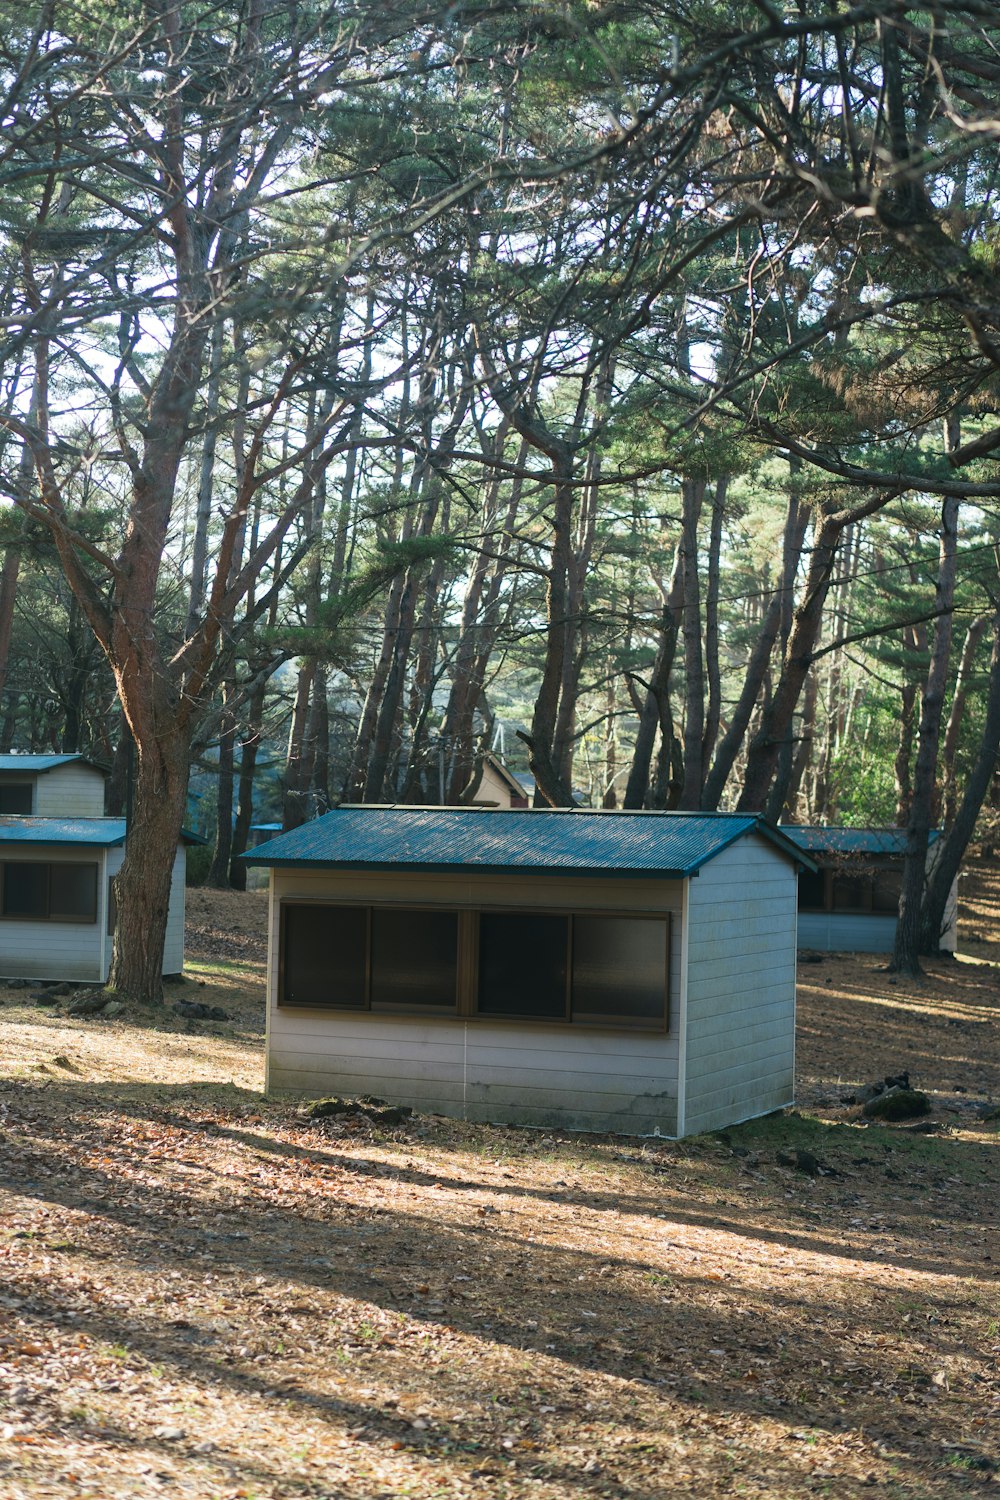 Casa de madera azul y blanca rodeada de árboles durante el día